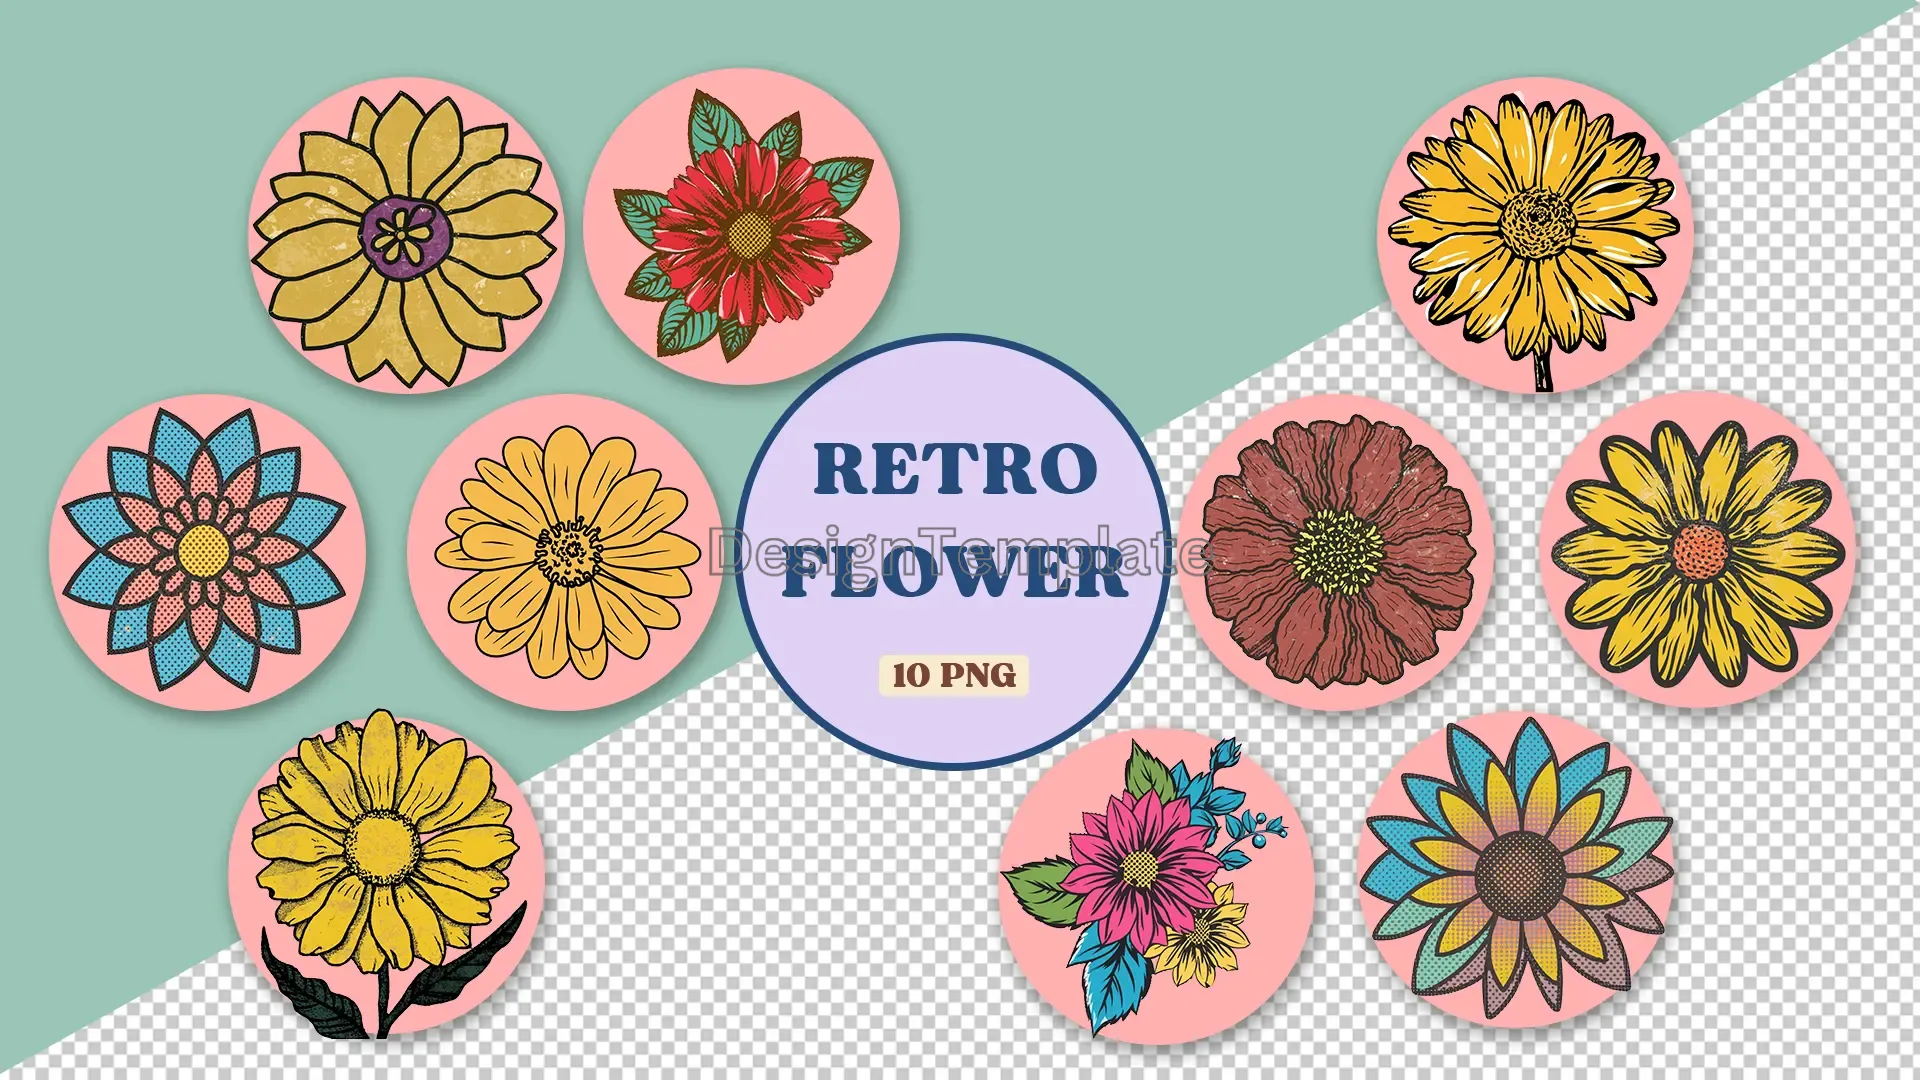 Vintage Floral Designs 3D Elements Pack image